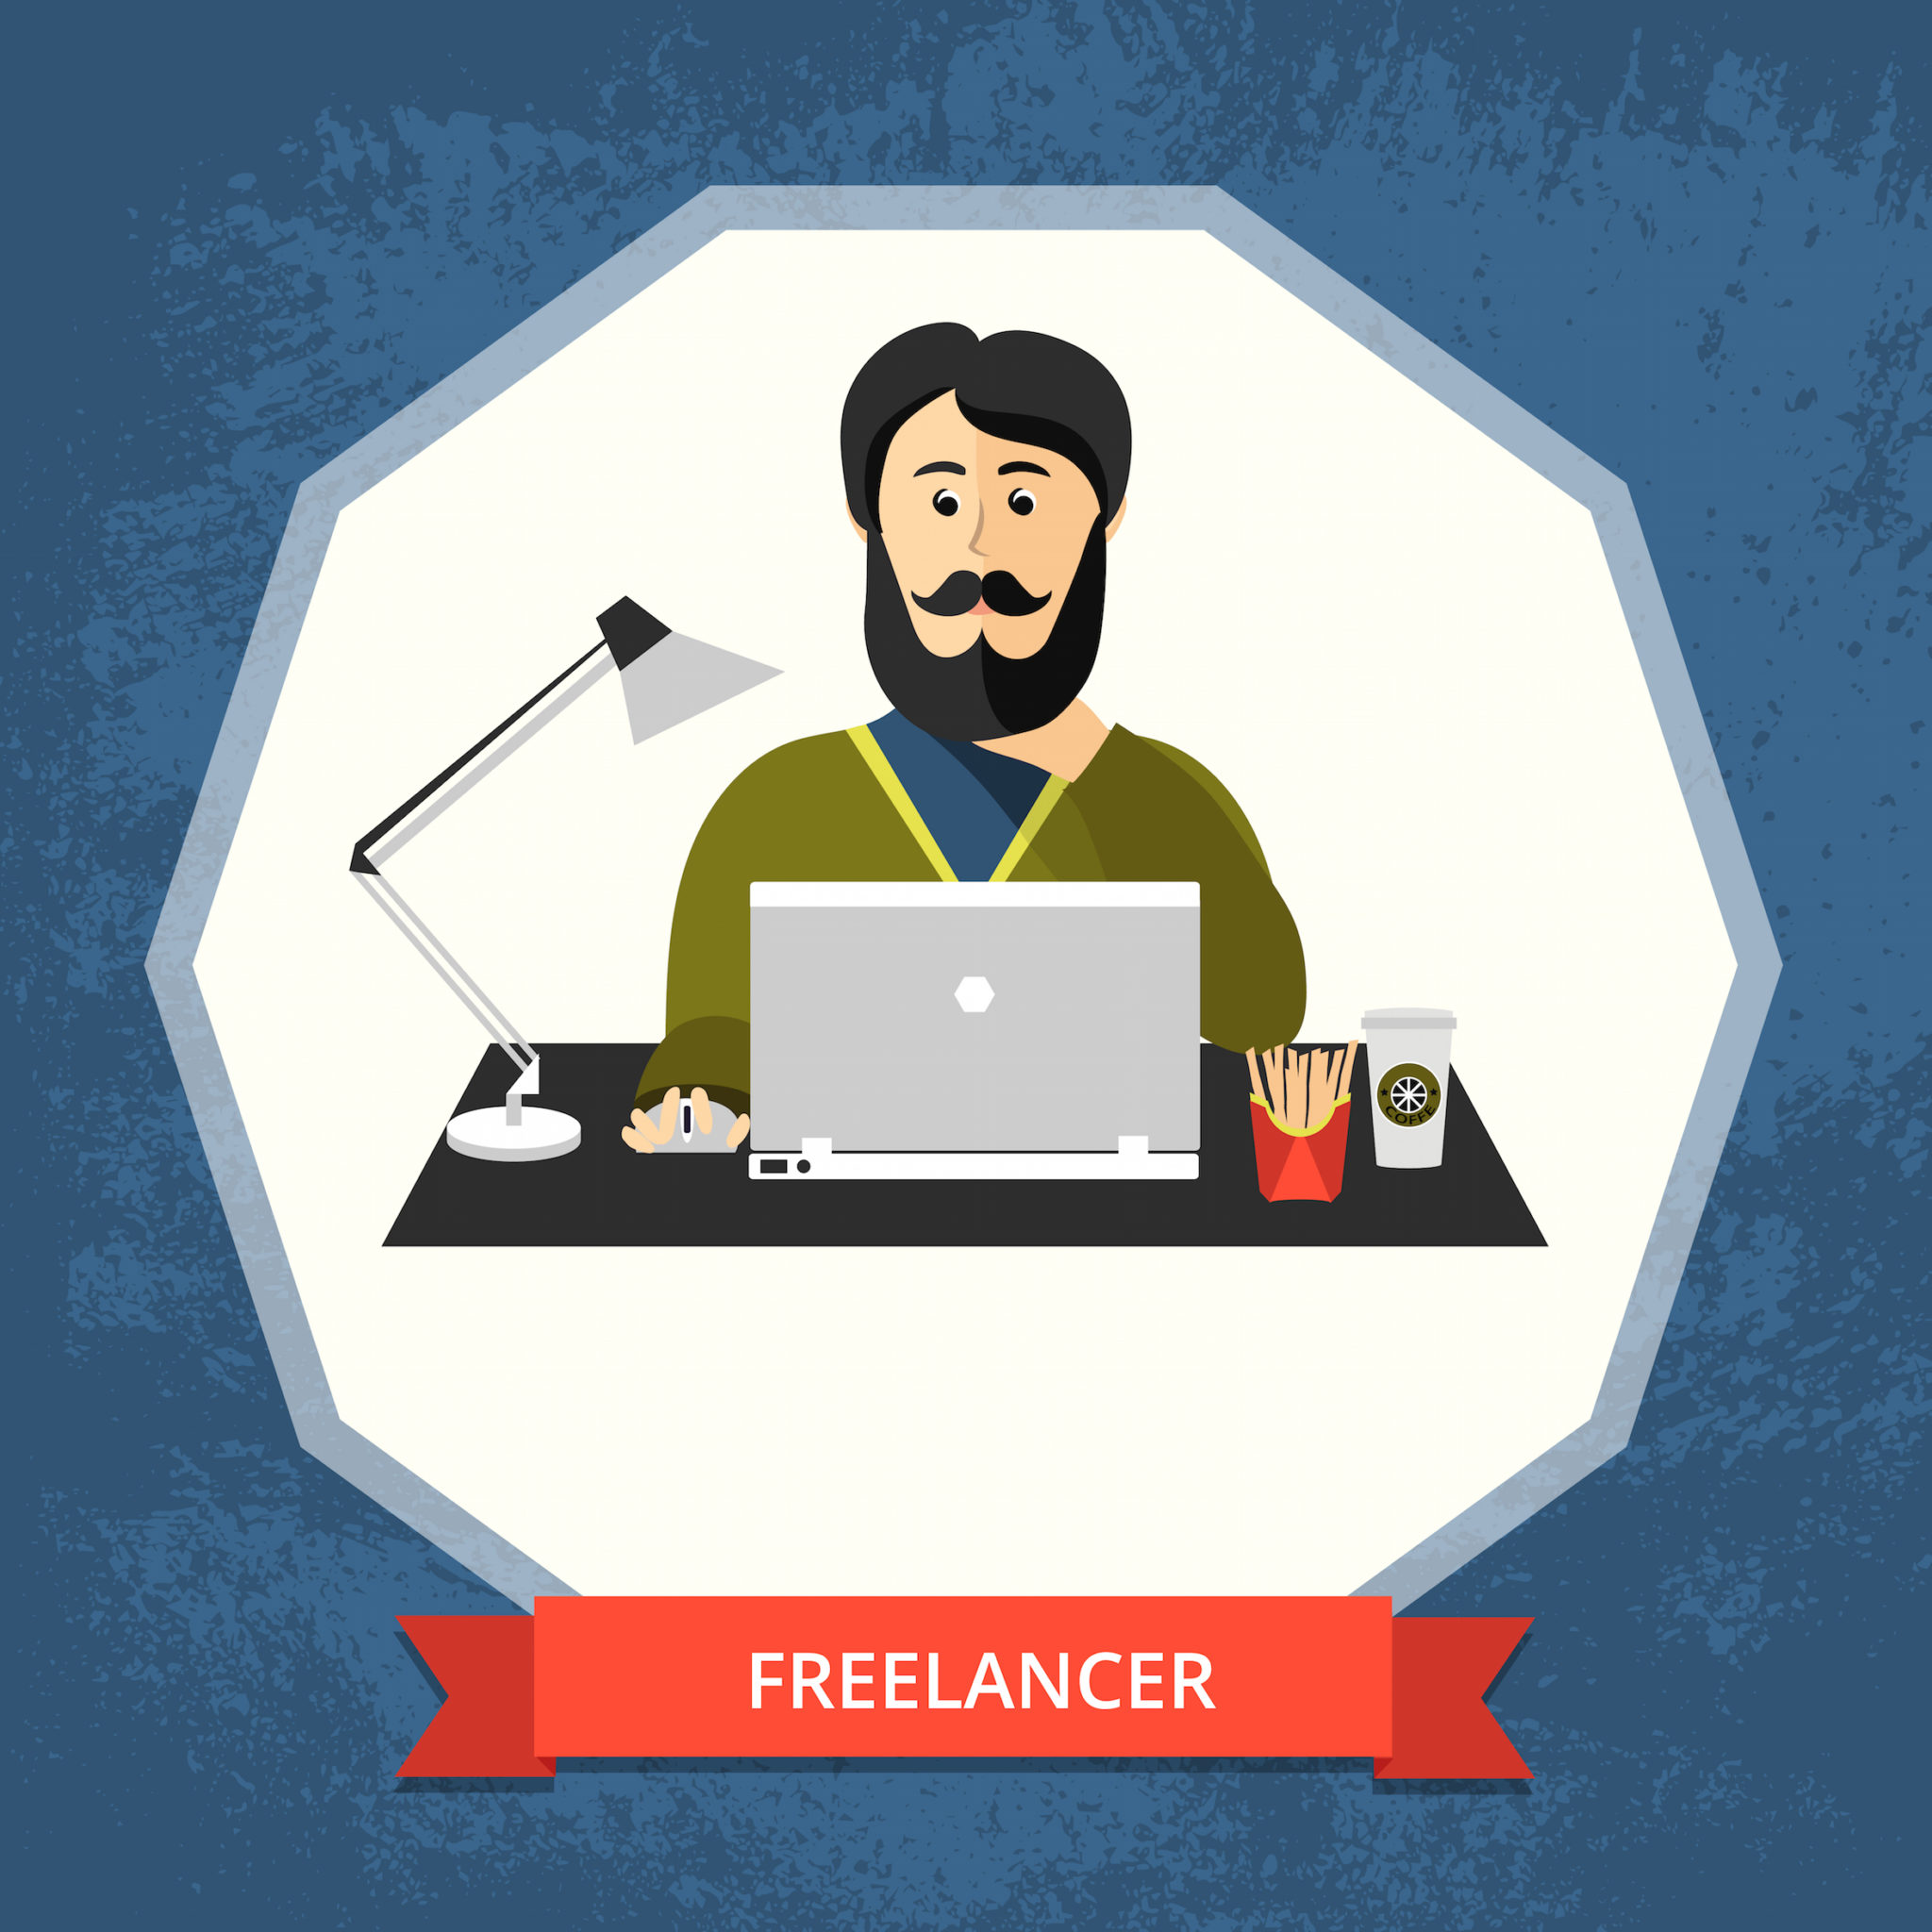 deducir como freelance